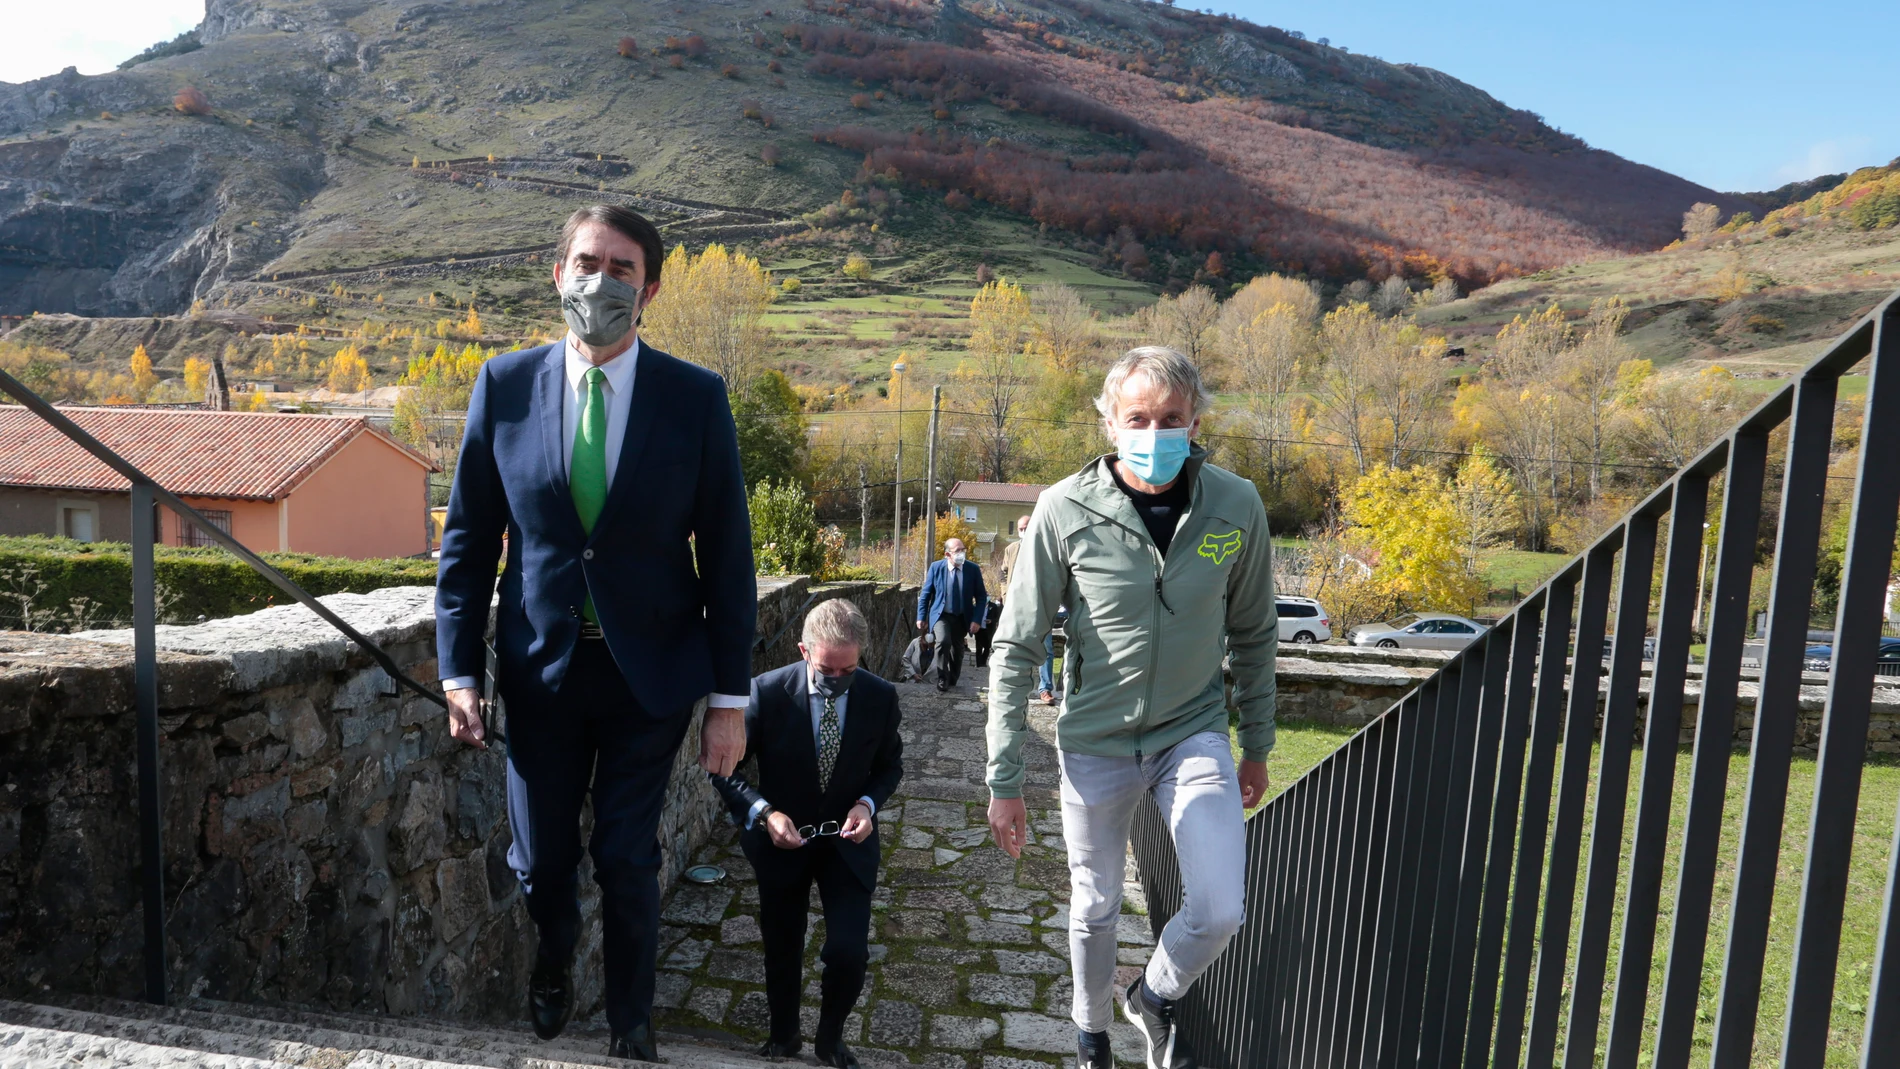 El consejero de Fomento y Medio Ambiente, Juan Carlos Suárez-Quiñones, presenta el proyecto de naturaleza, turismo y desarrollo rural "Zona Alfa León" junto a su impulsor Jesús Calleja